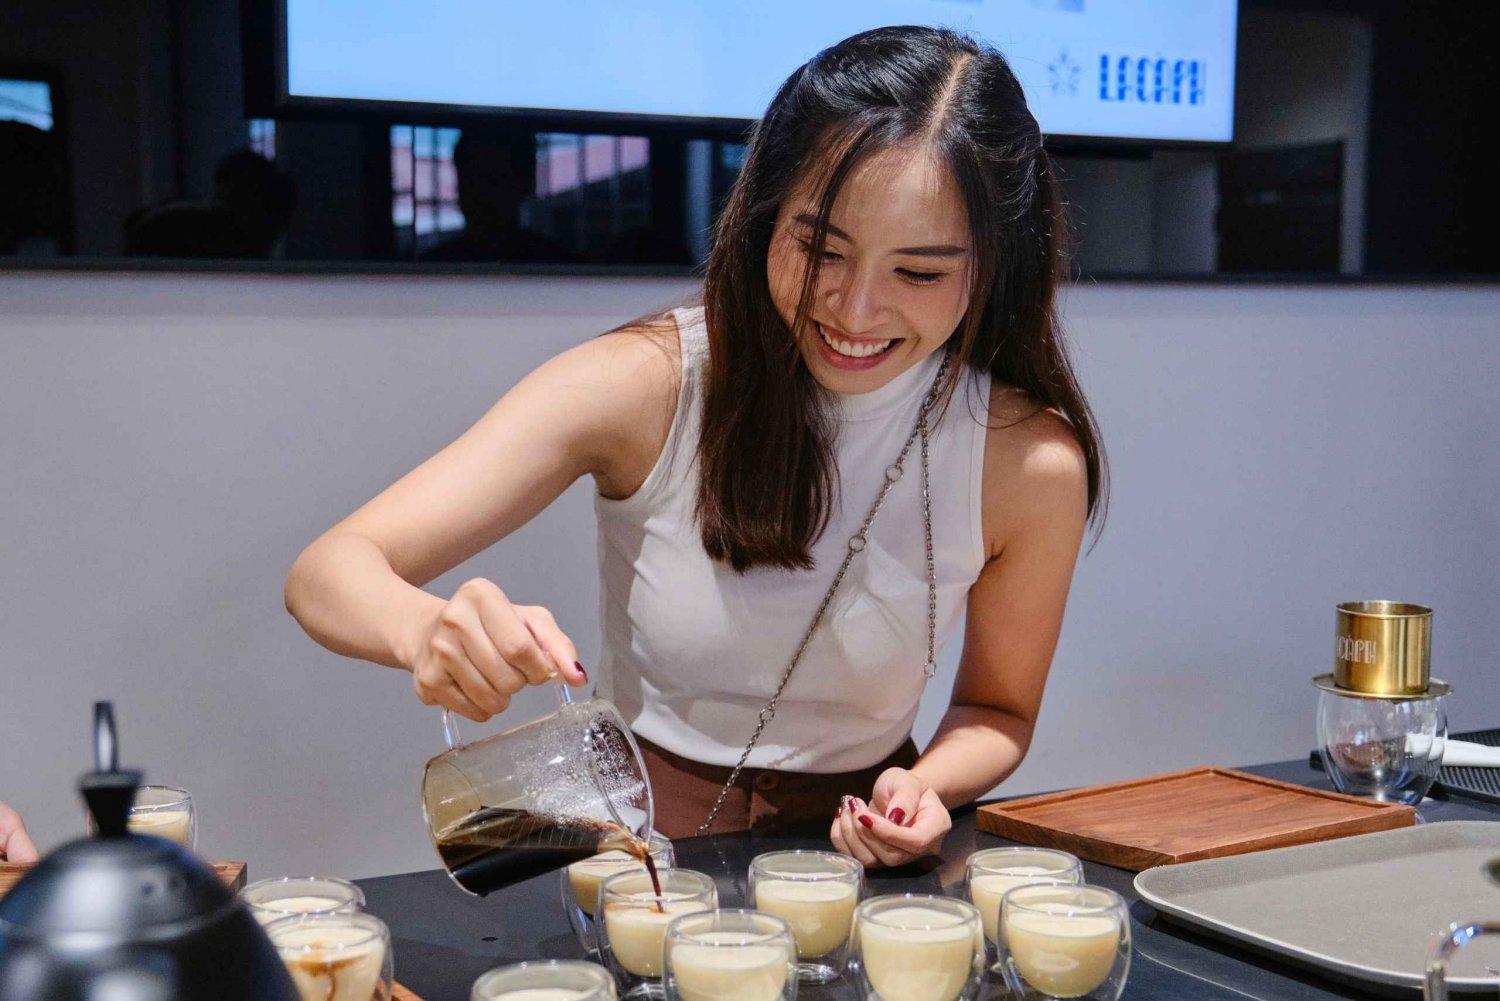 Tekniker och hemligheter bakom det berömda vietnamesiska äggkaffet